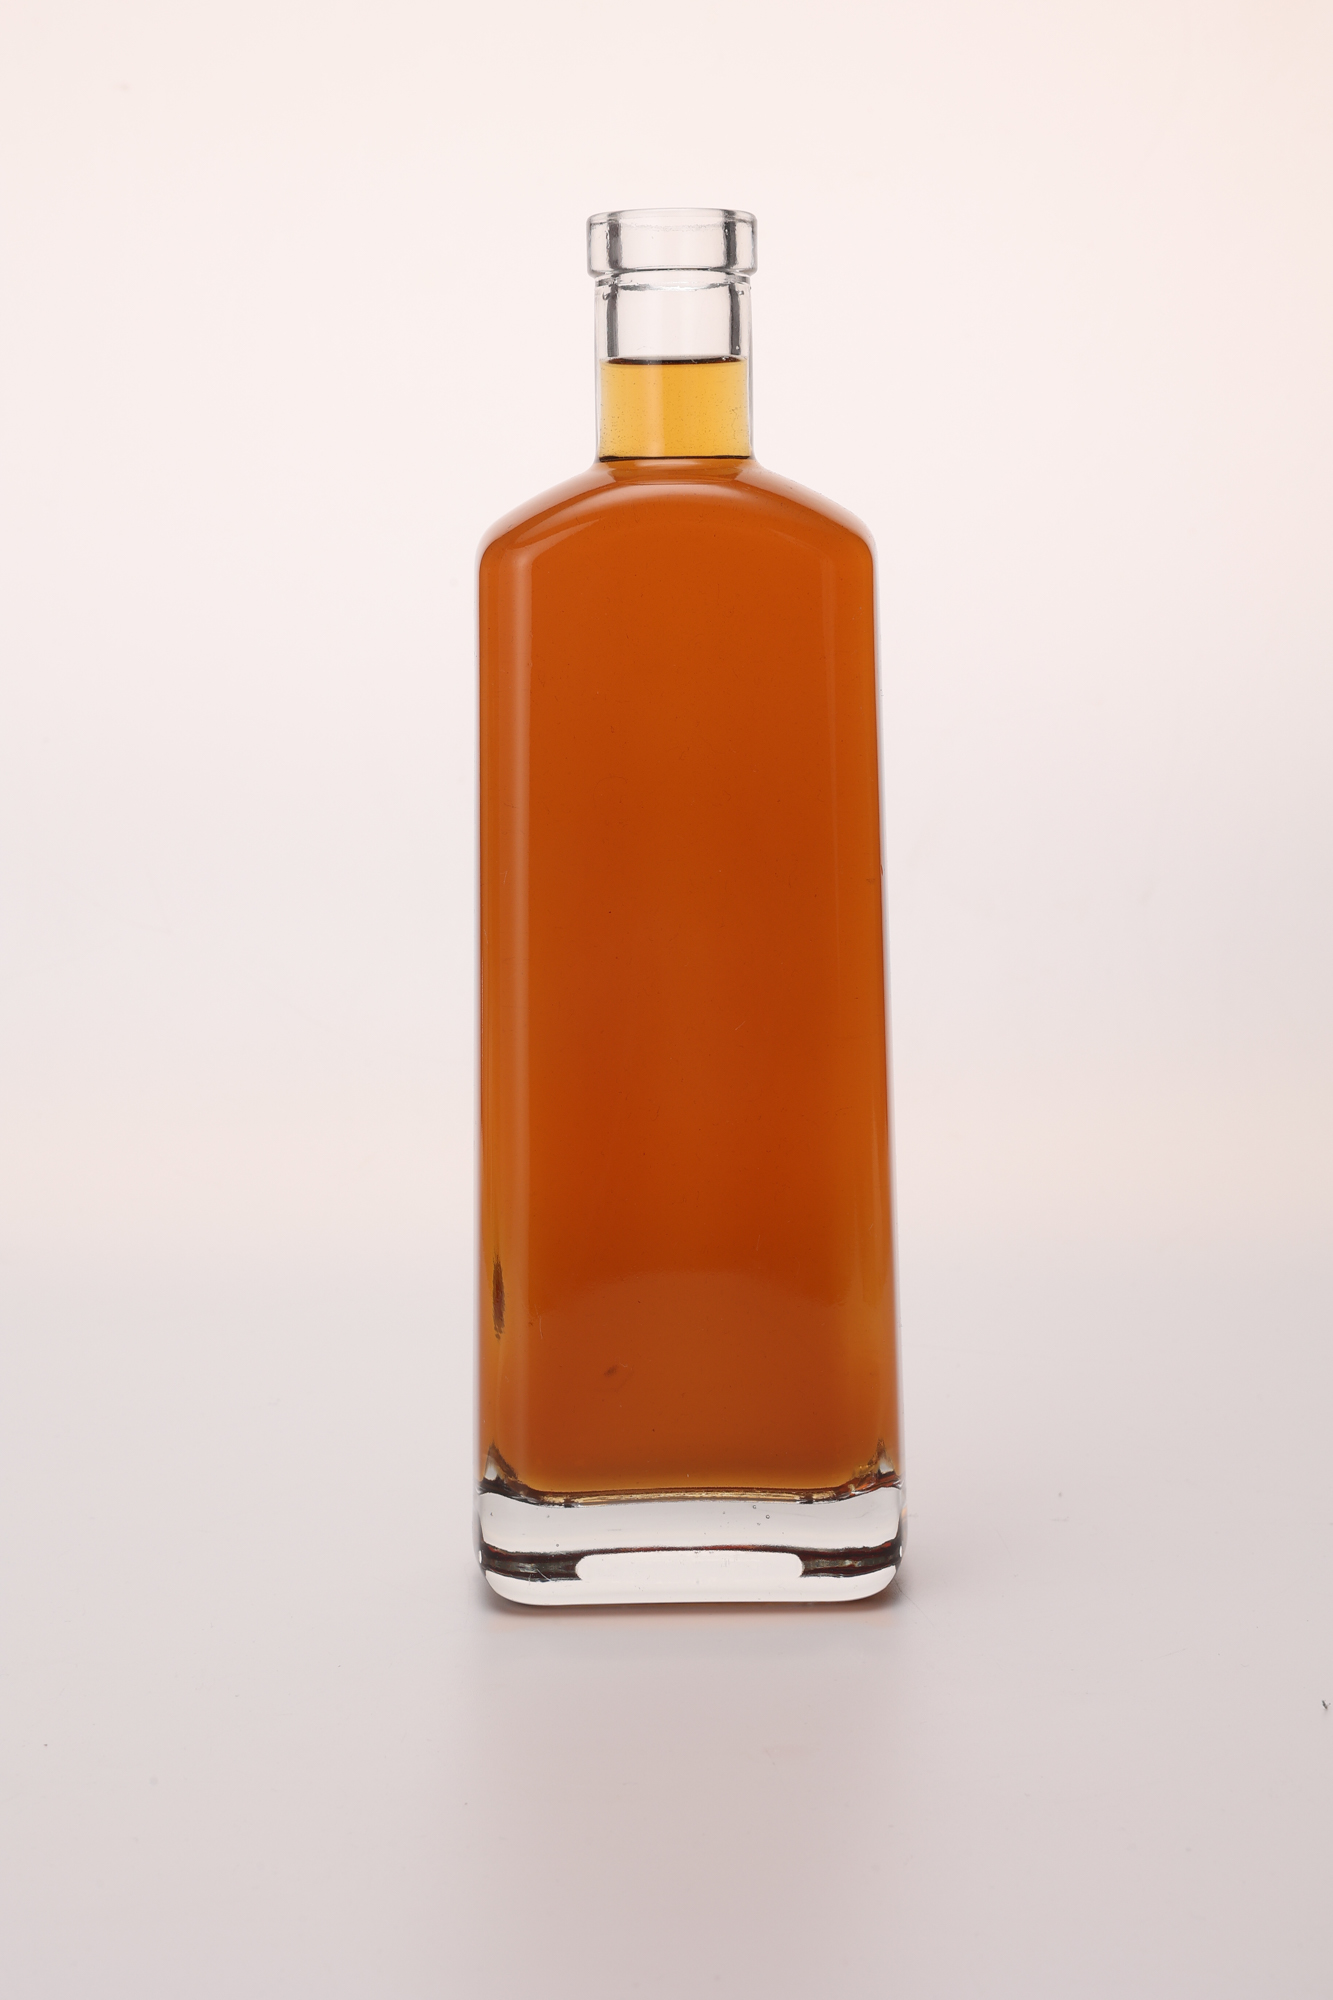 Glass Liquor Gin Bottle for Vodka Whisky Rum Tequila 500ml 700ml 750ml